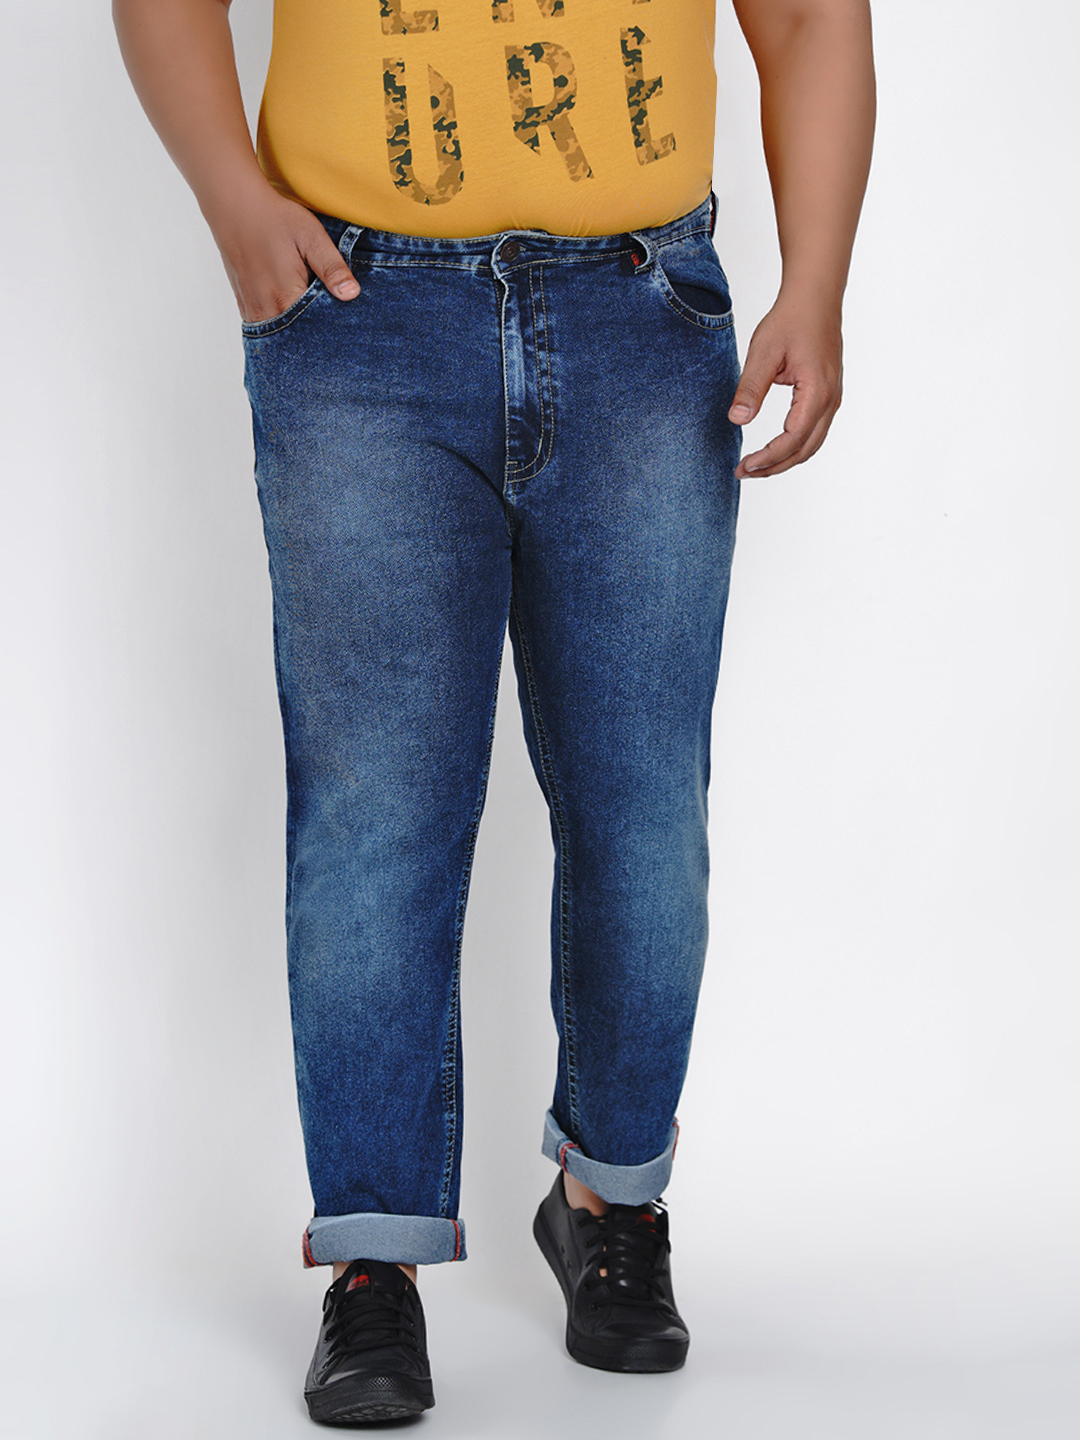 affordables/jeans/JPJ2013/jpj2013-3.jpg